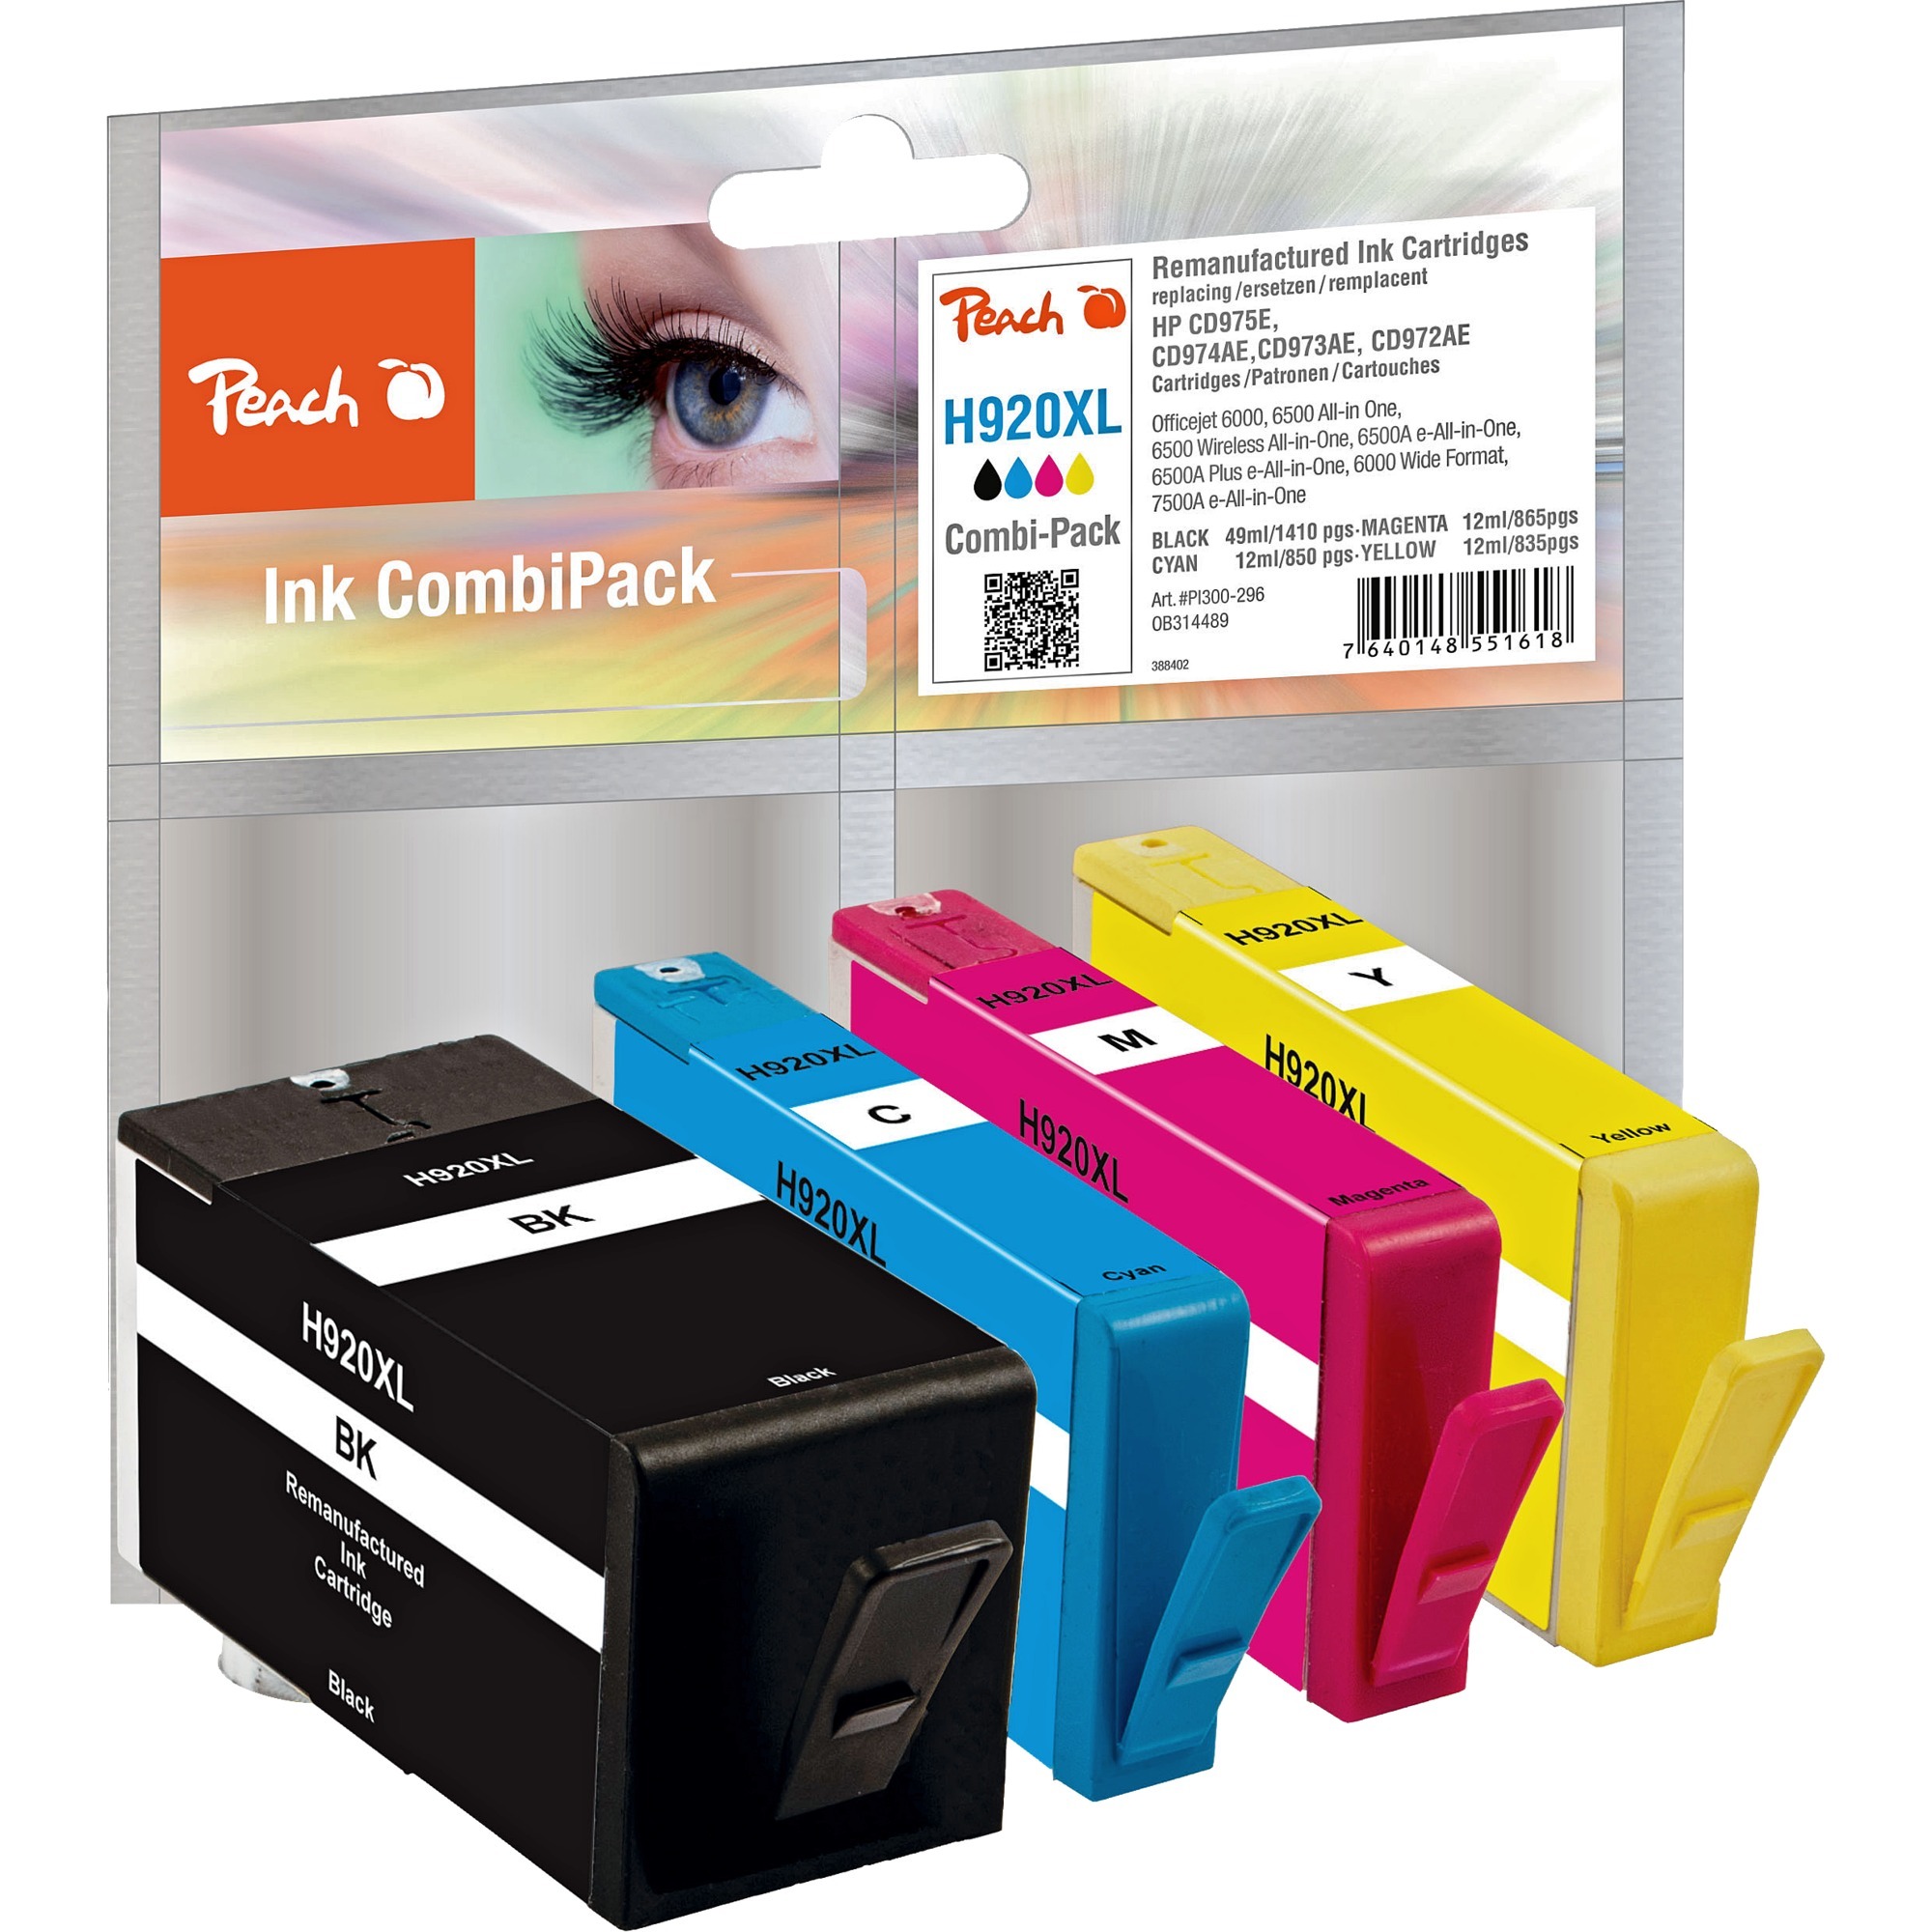 Image of Alternate - Tinte Spar Pack PI300-296 online einkaufen bei Alternate